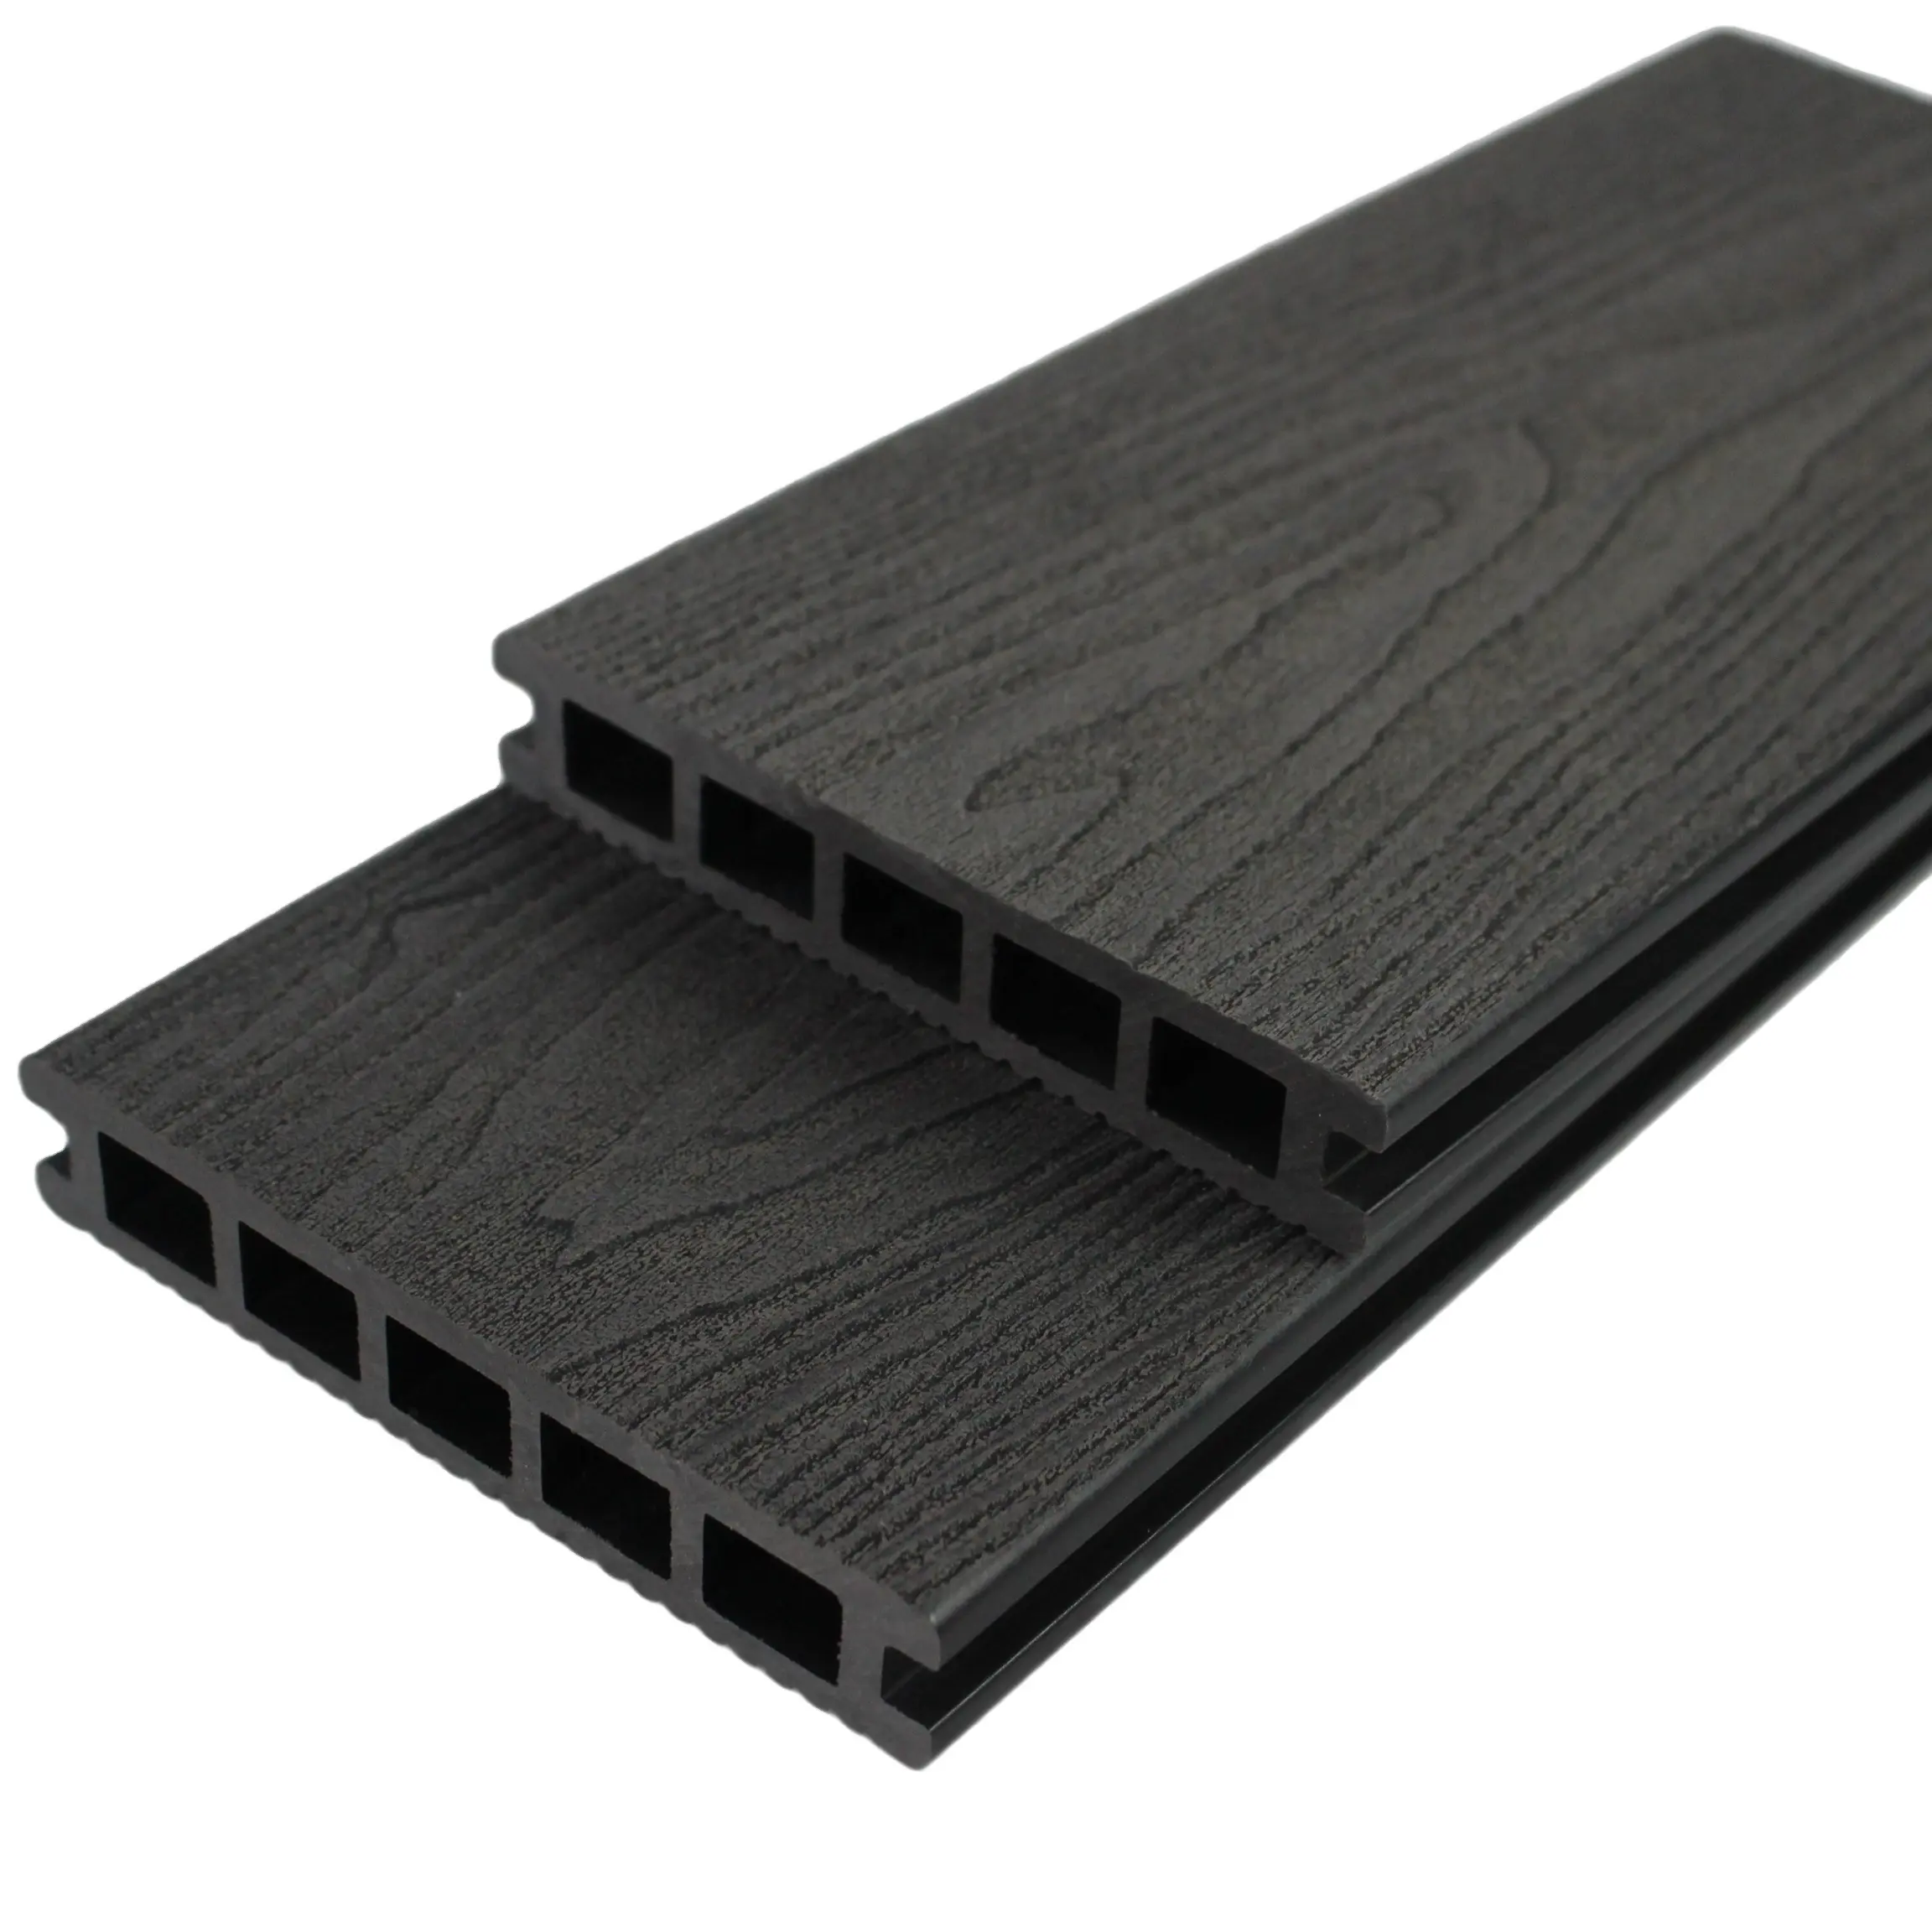 Nova barato quadrado oco Decking composto com padrão de grão de madeira em relevo profundo 3D bordo wpc